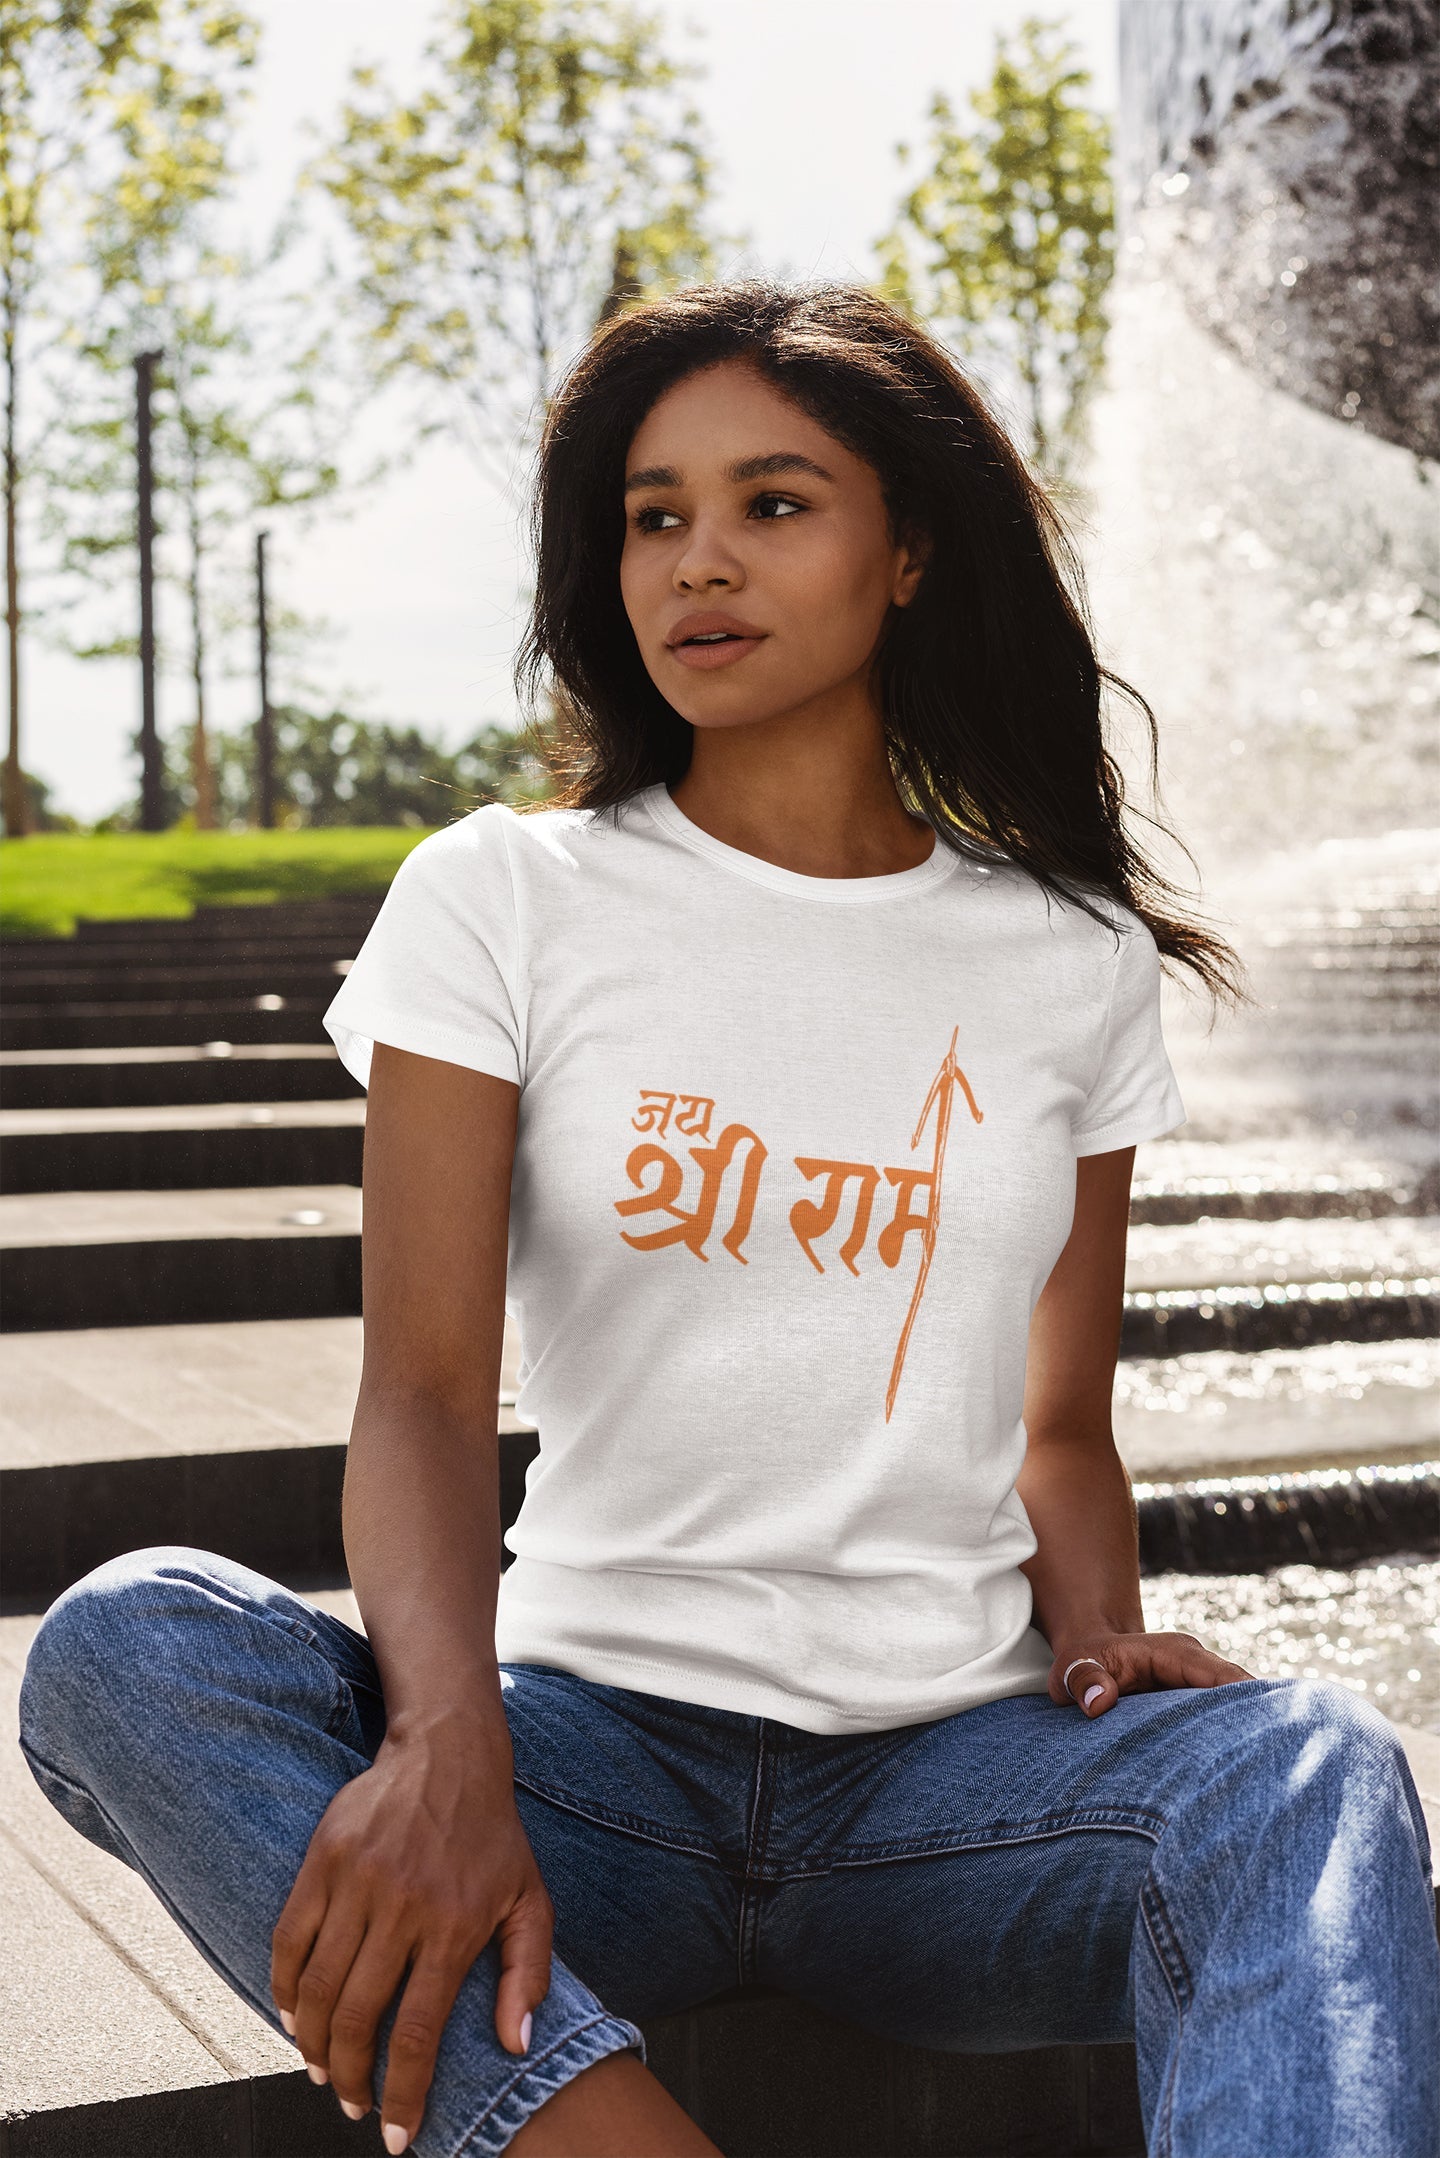 Summer T-shirt For Women ( Jai Shri Ram )